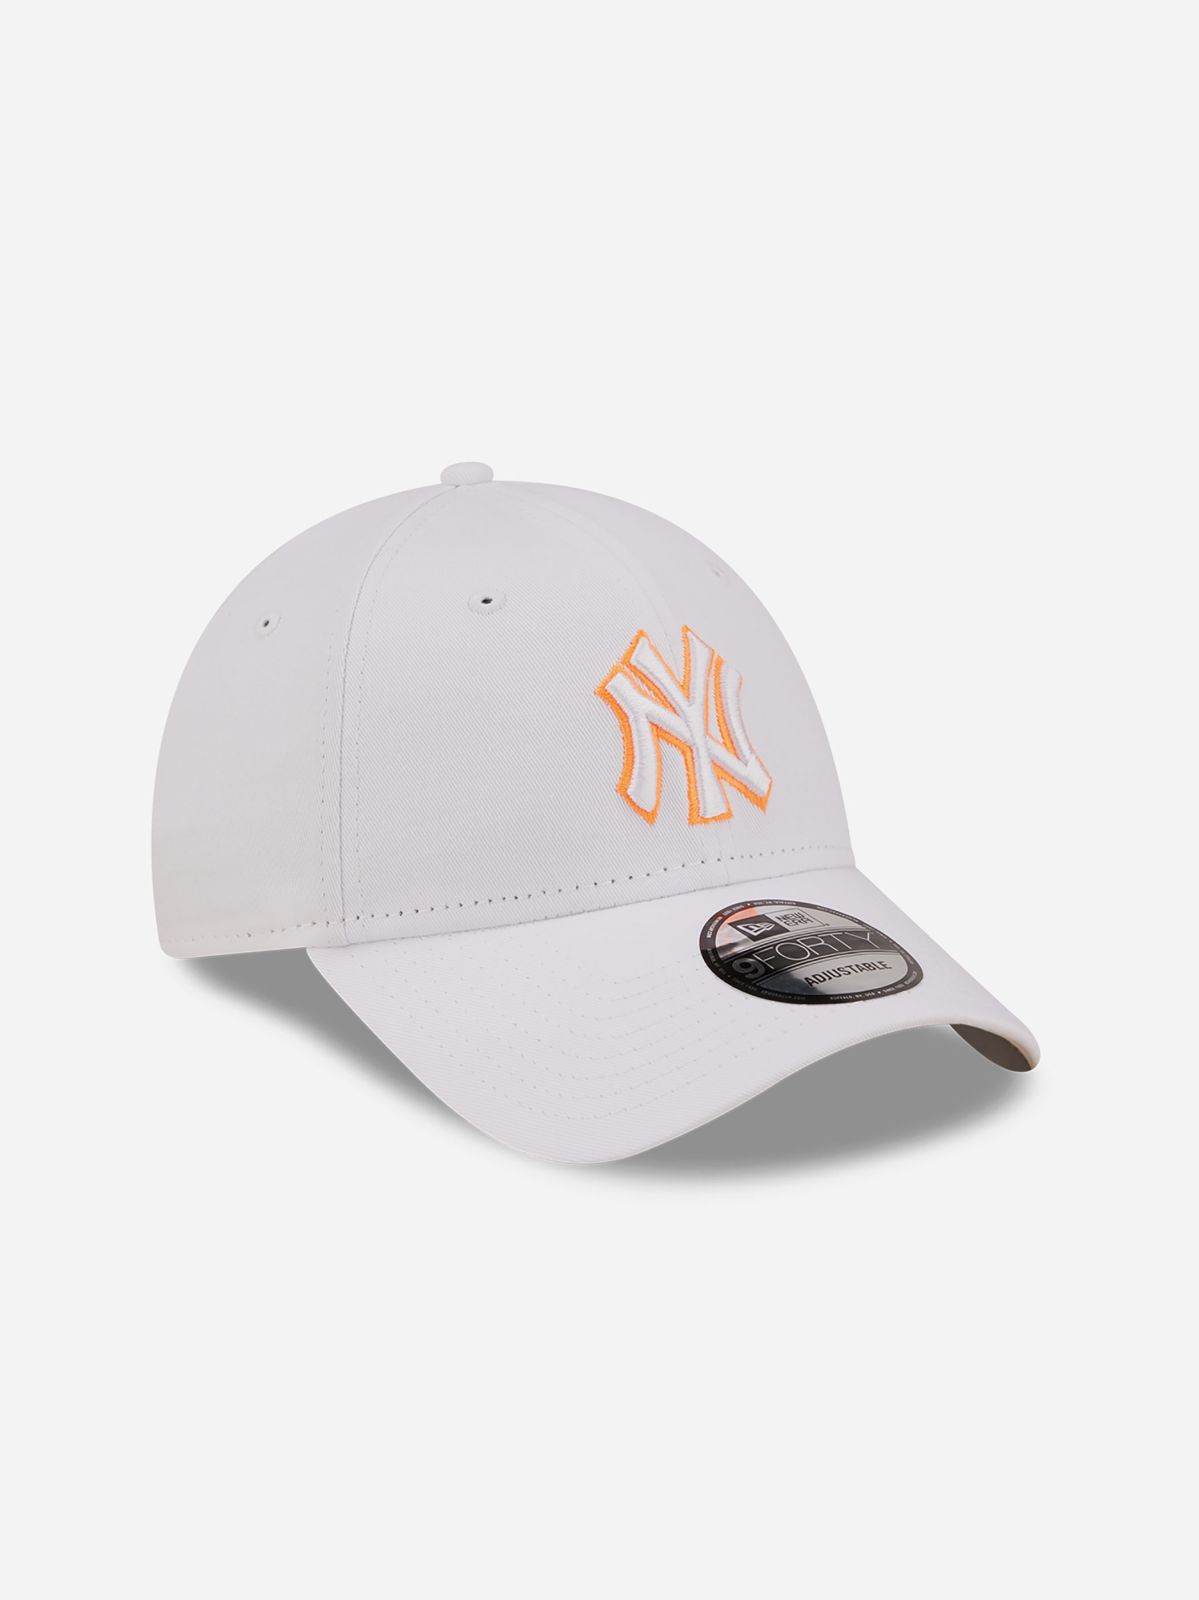  כובע מצחייה עם לוגו / יוניסקס של NEW ERA